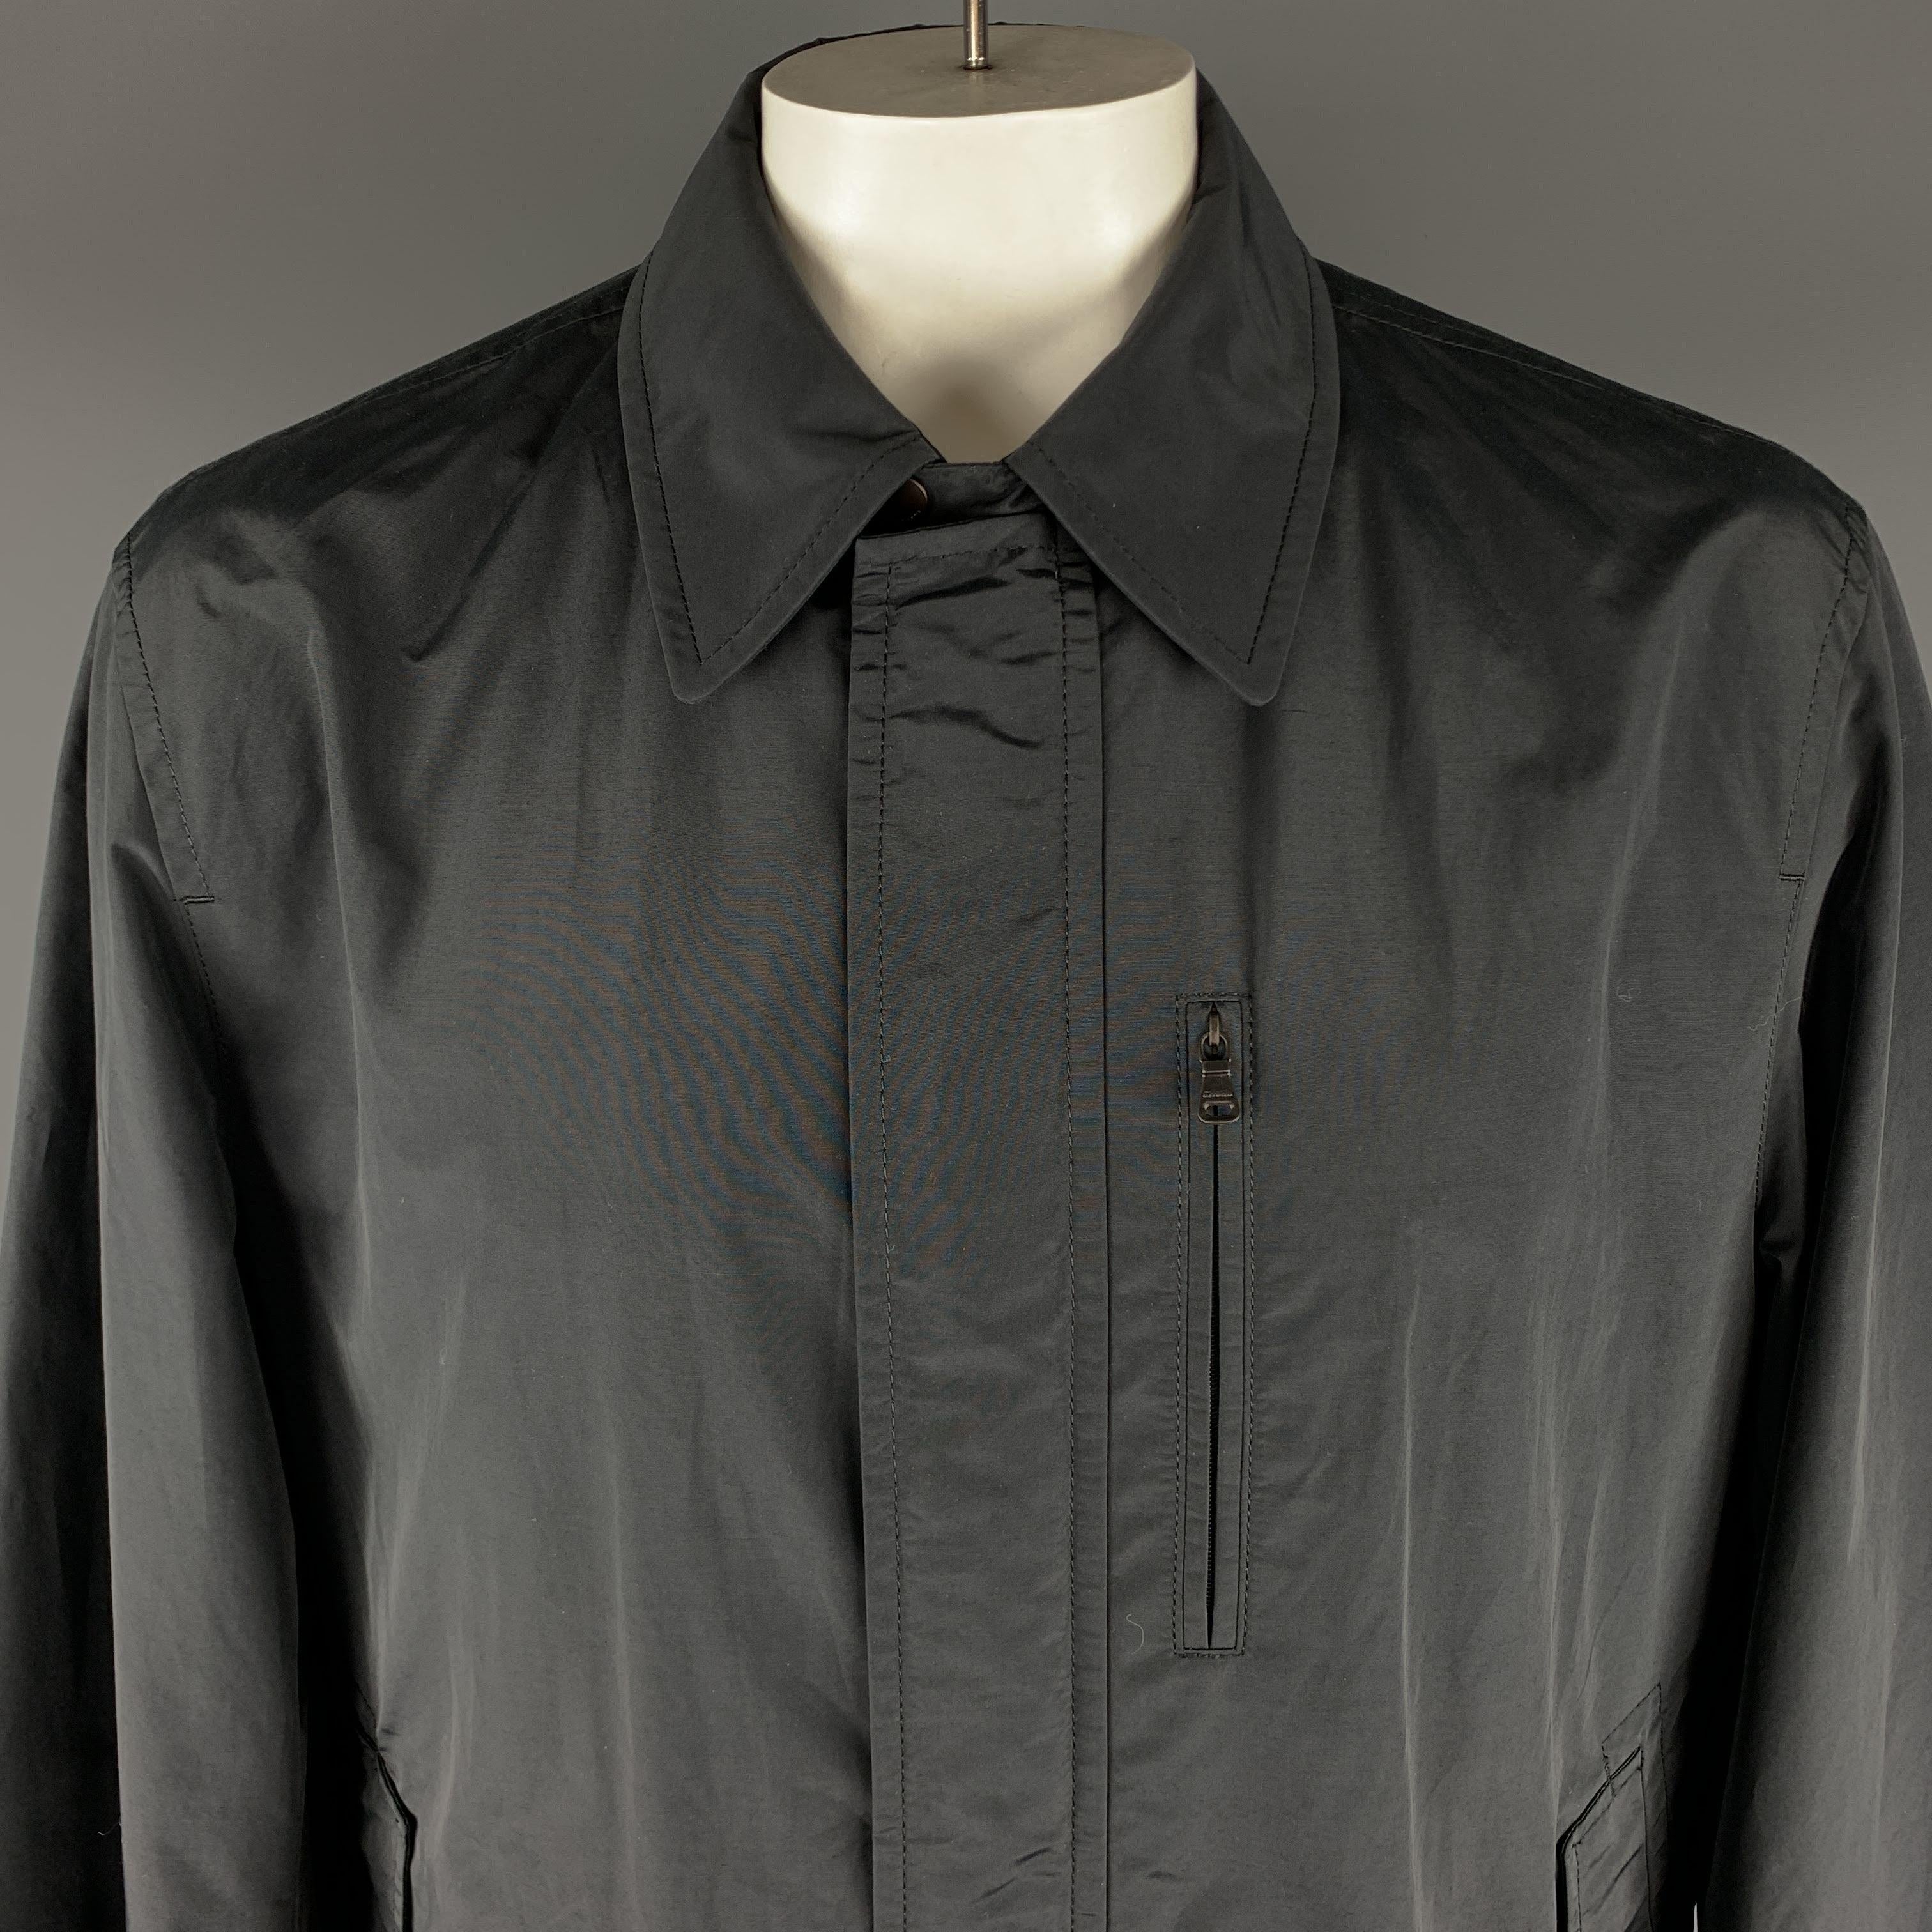 HUGO BOSS Langer Mantel in Schwarz aus festem Baumwoll-/Nylonmaterial, mit spitzem Kragen, Reißverschluss und Druckknöpfen am Verschluss sowie Reißverschluss- und Einschubtaschen. Ausgezeichneter Pre-Owned Zustand. 

Markiert:   IT 56
